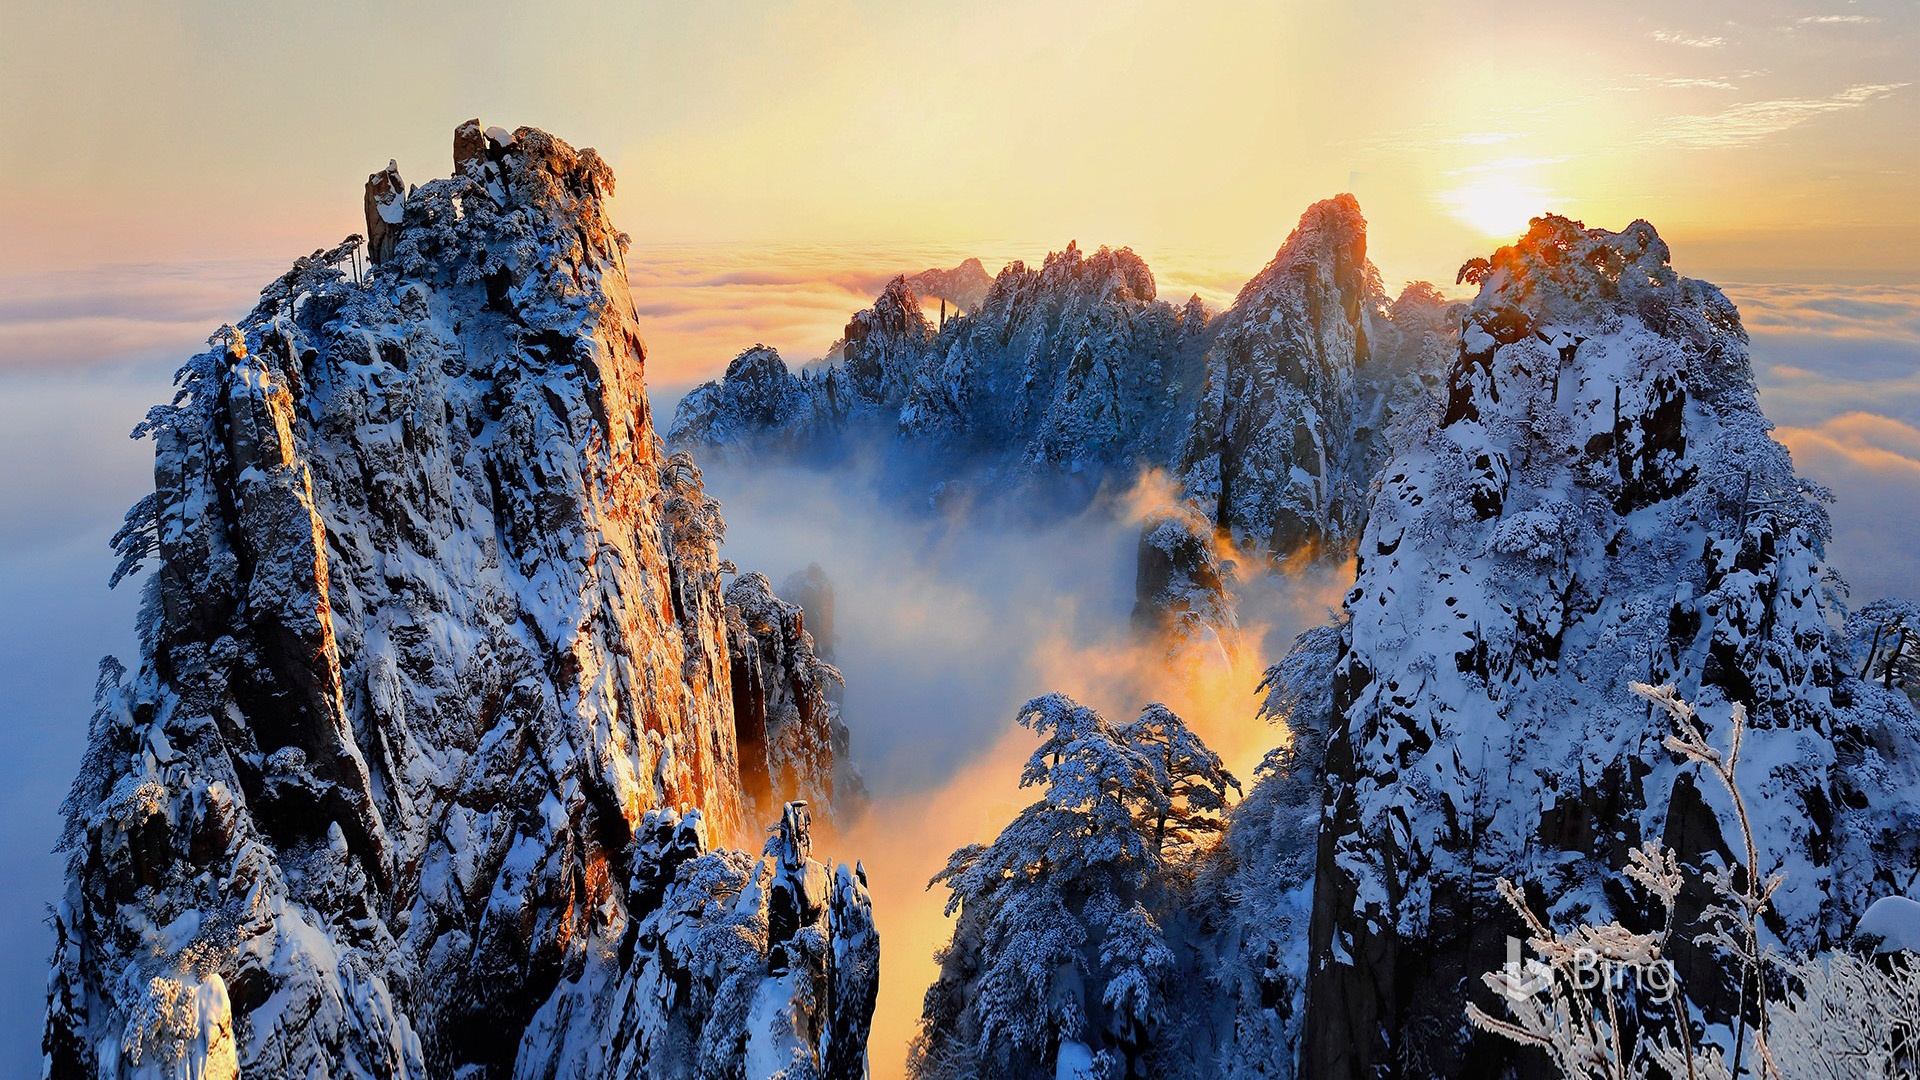 安徽黄山出现今年入冬首场雾凇云海景观